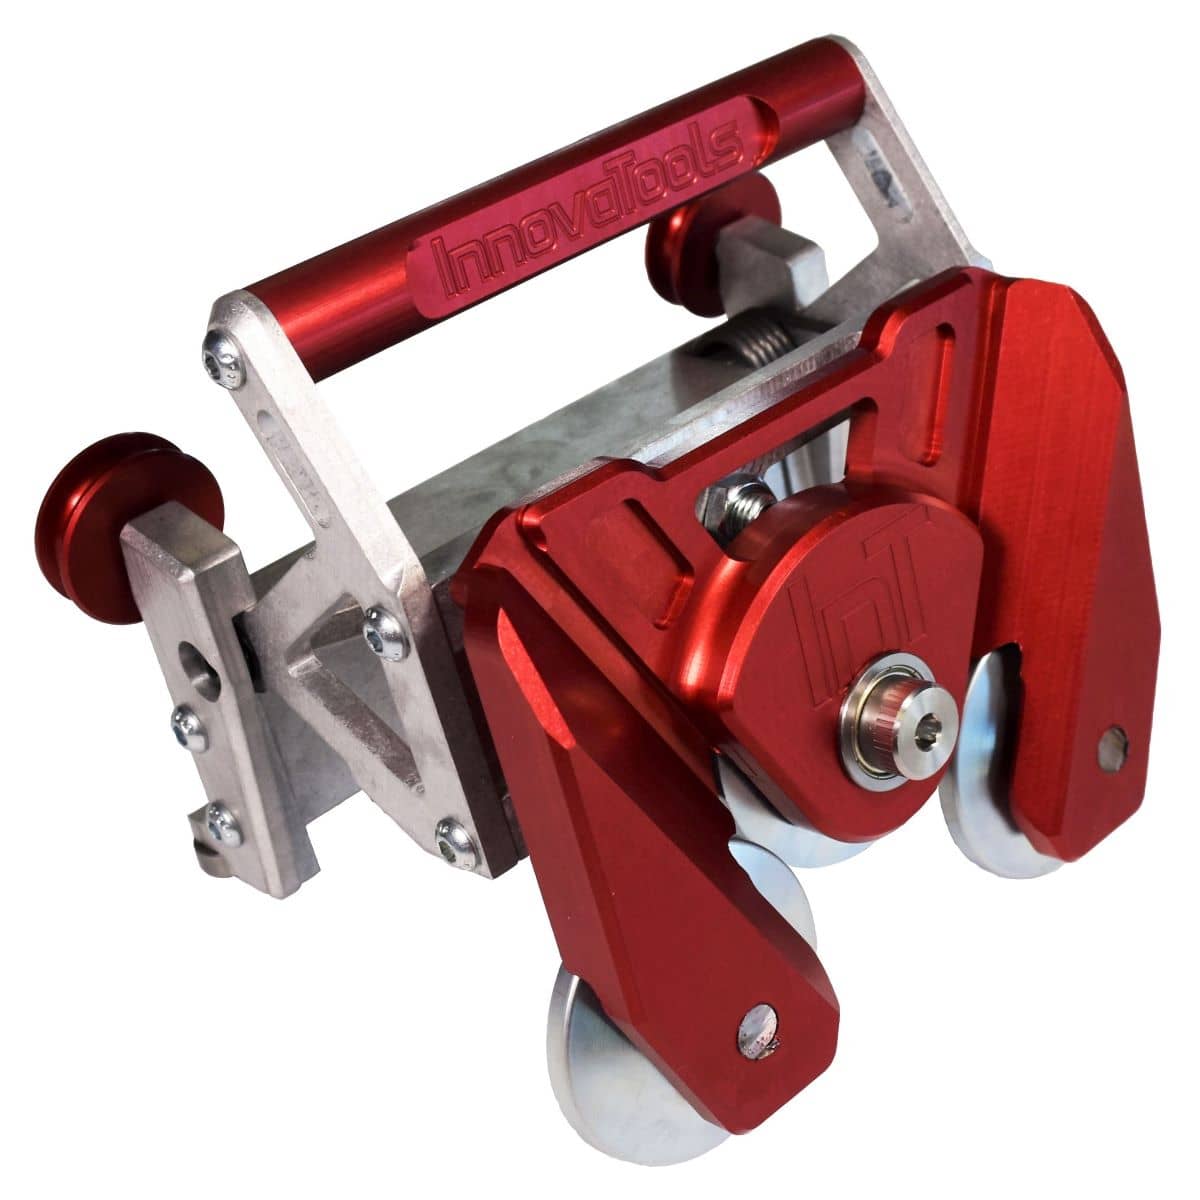 Herramienta de corte de 2 vías para frenos de revestimiento de aluminio Versión 2.0 - Con cuerpo anodizado rojo grabado con el nombre y el logotipo de la empresa